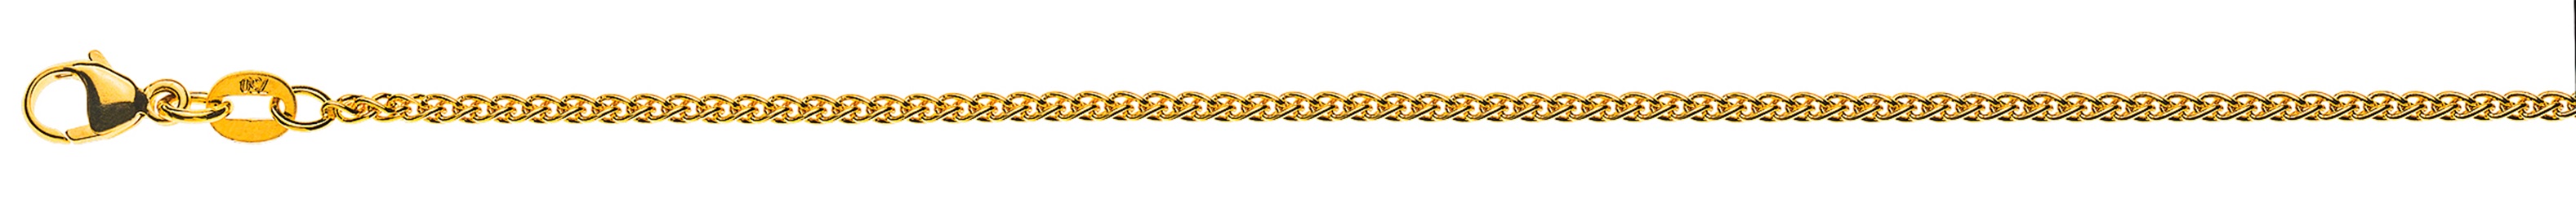 AURONOS Élégance Necklace yellow gold 14K cable chain 42cm 1.6mm